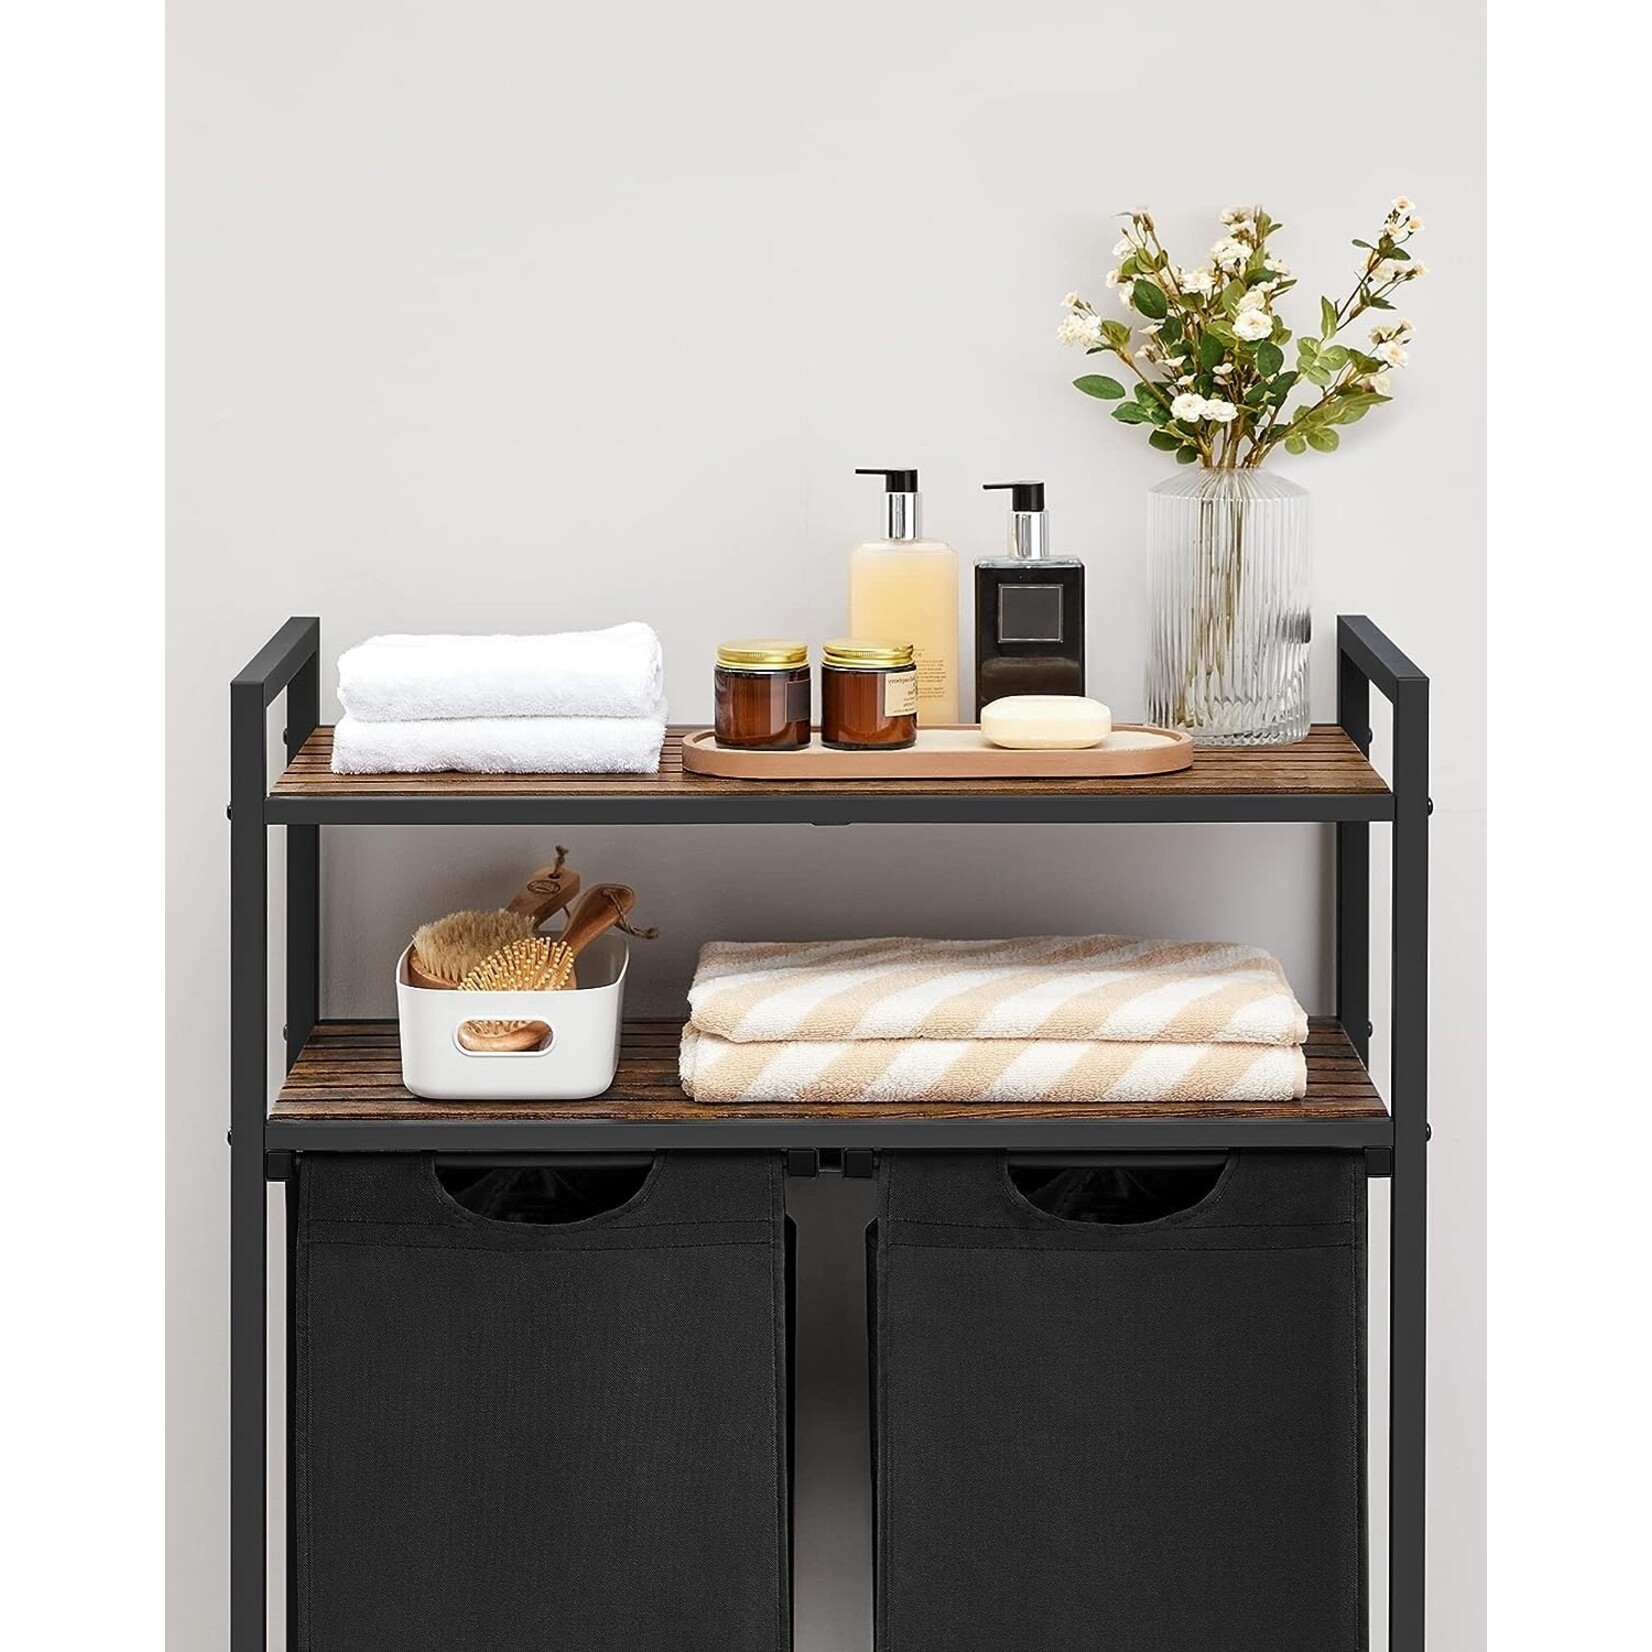 Bobbel Home Bobbel Home - Laundry basket - 2 compartments - 2 shelves - Metal frame - Brown & Black